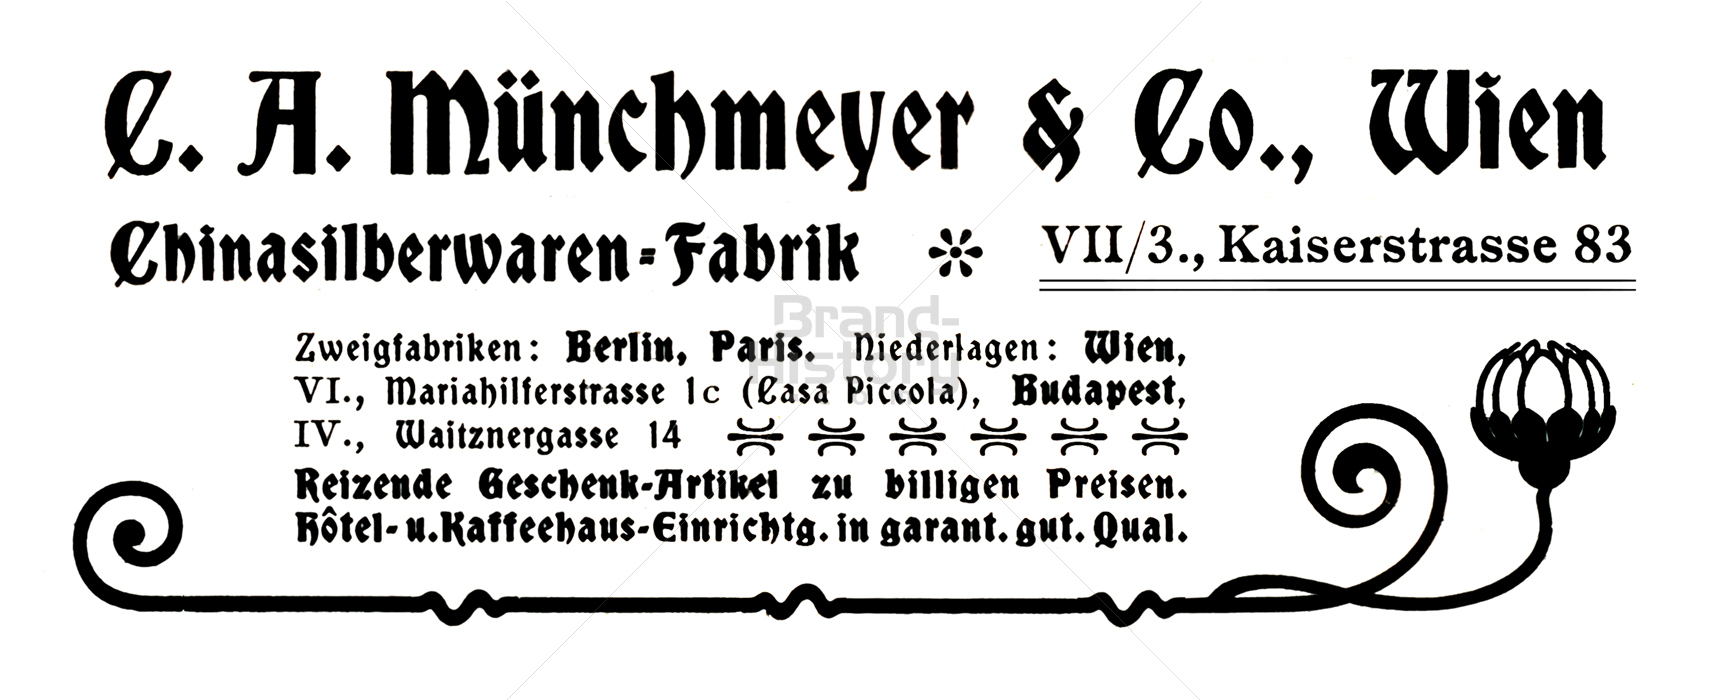 C. A. Münchmeyer & Co., Wien